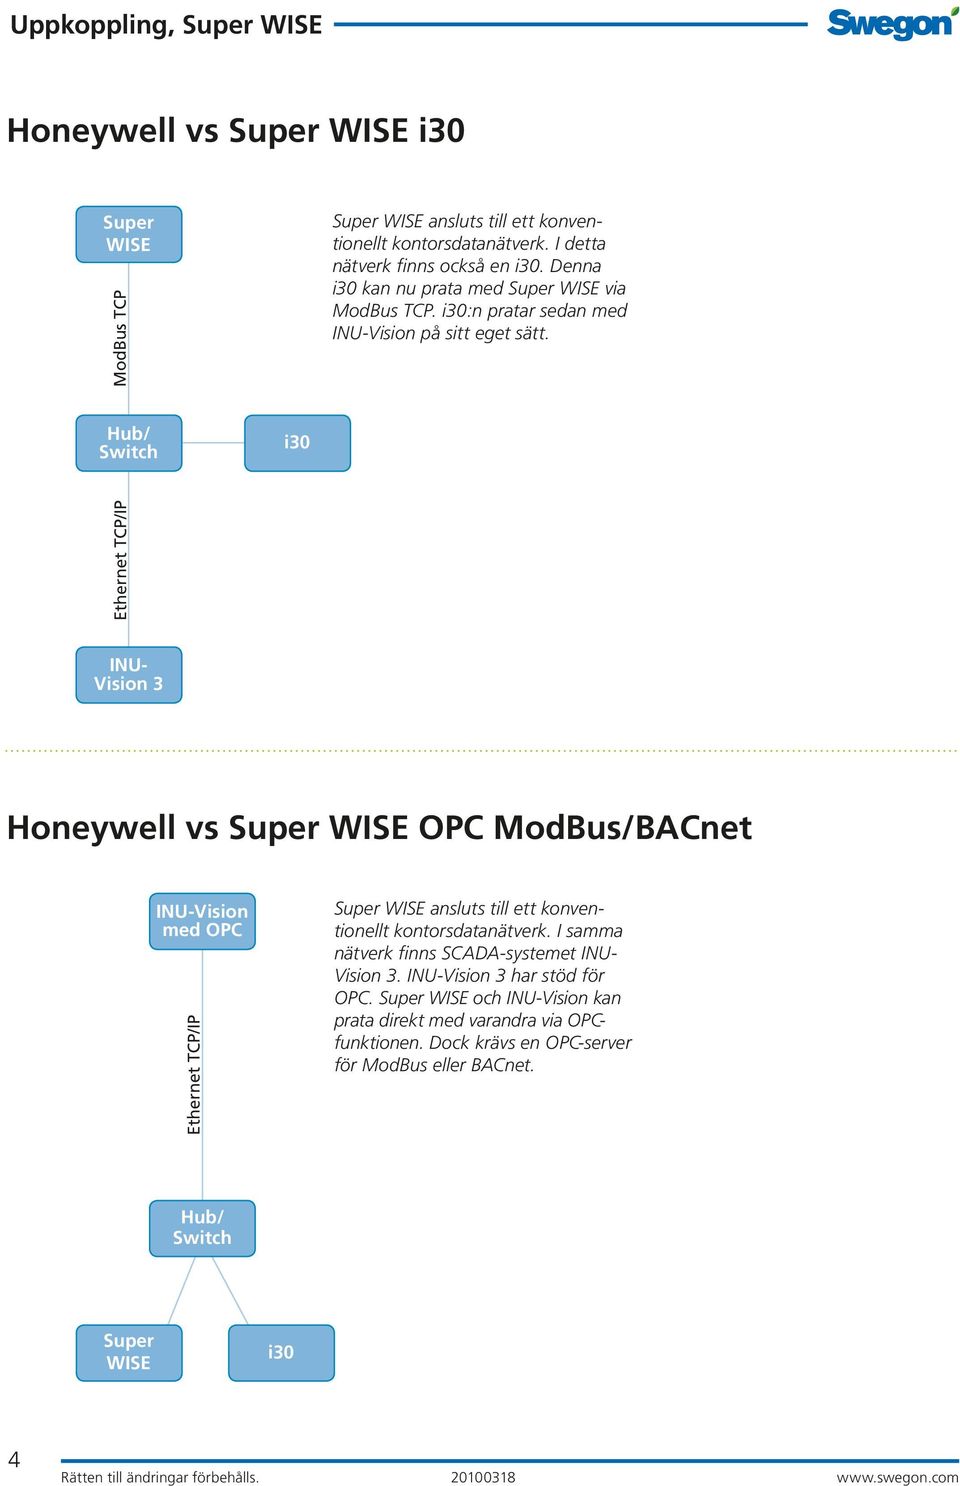 INU- Vision 3 Honeywell vs OPC ModBus/BACnet INU-Vision med OPC ansluts till ett konventionellt kontorsdatanätverk.